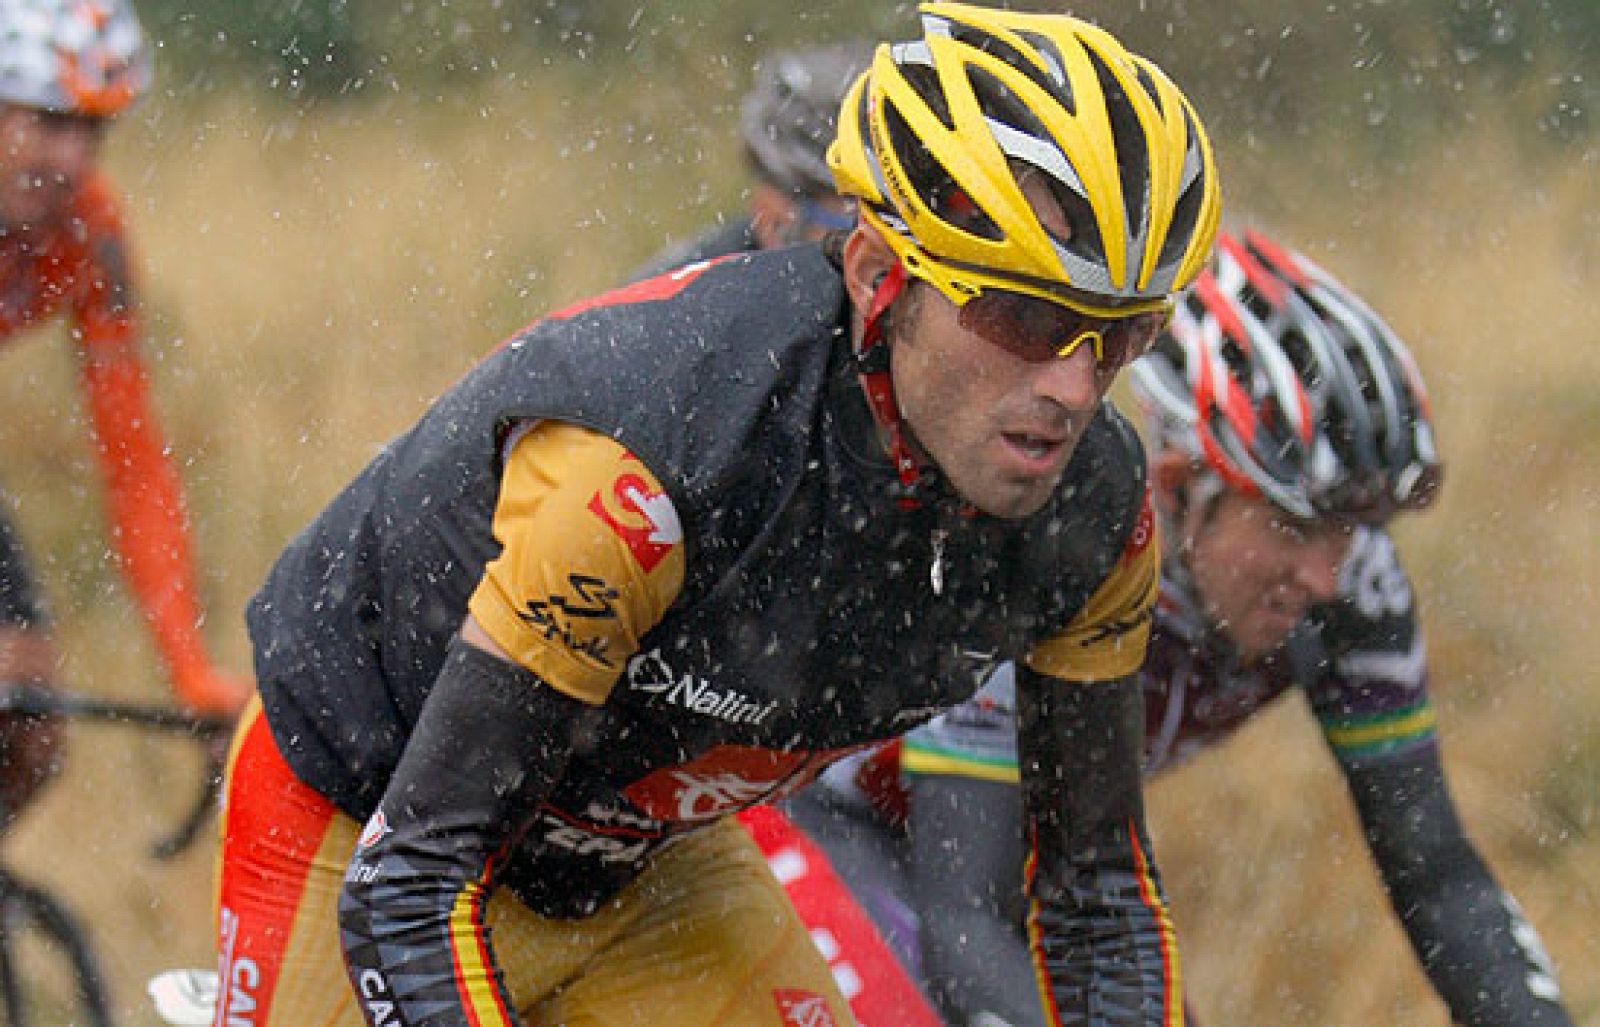 El español Juan José Cobo (Fuji-Servetto) ha ganado la 19ª etapa de la Vuelta. Alejandro Valverde es más líder. 